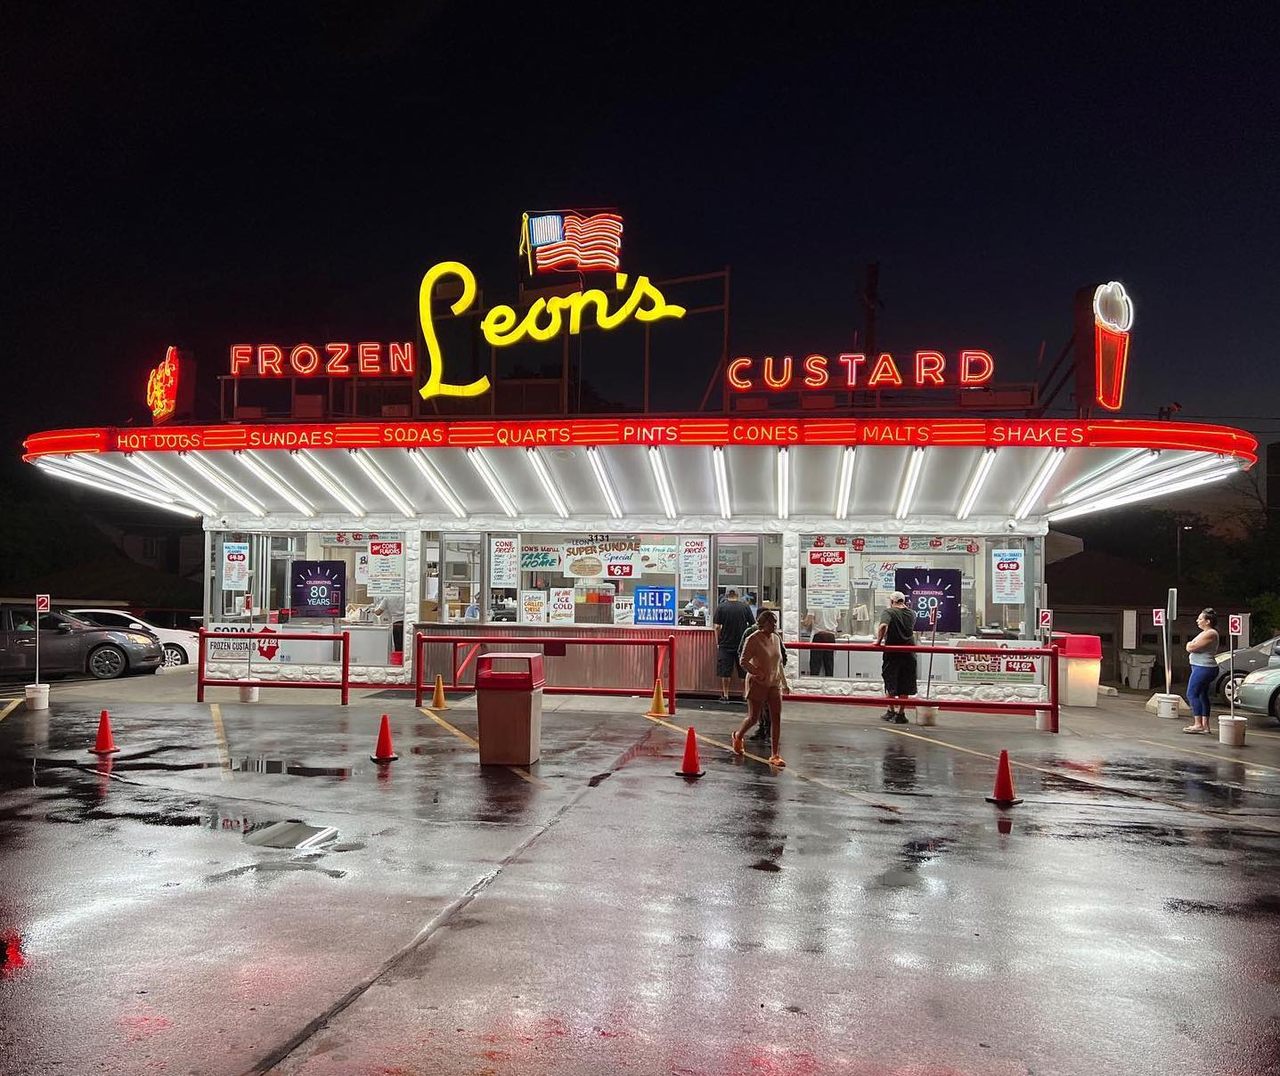 Leon's of Milwaukee has been slinging frozen custard since 1942.